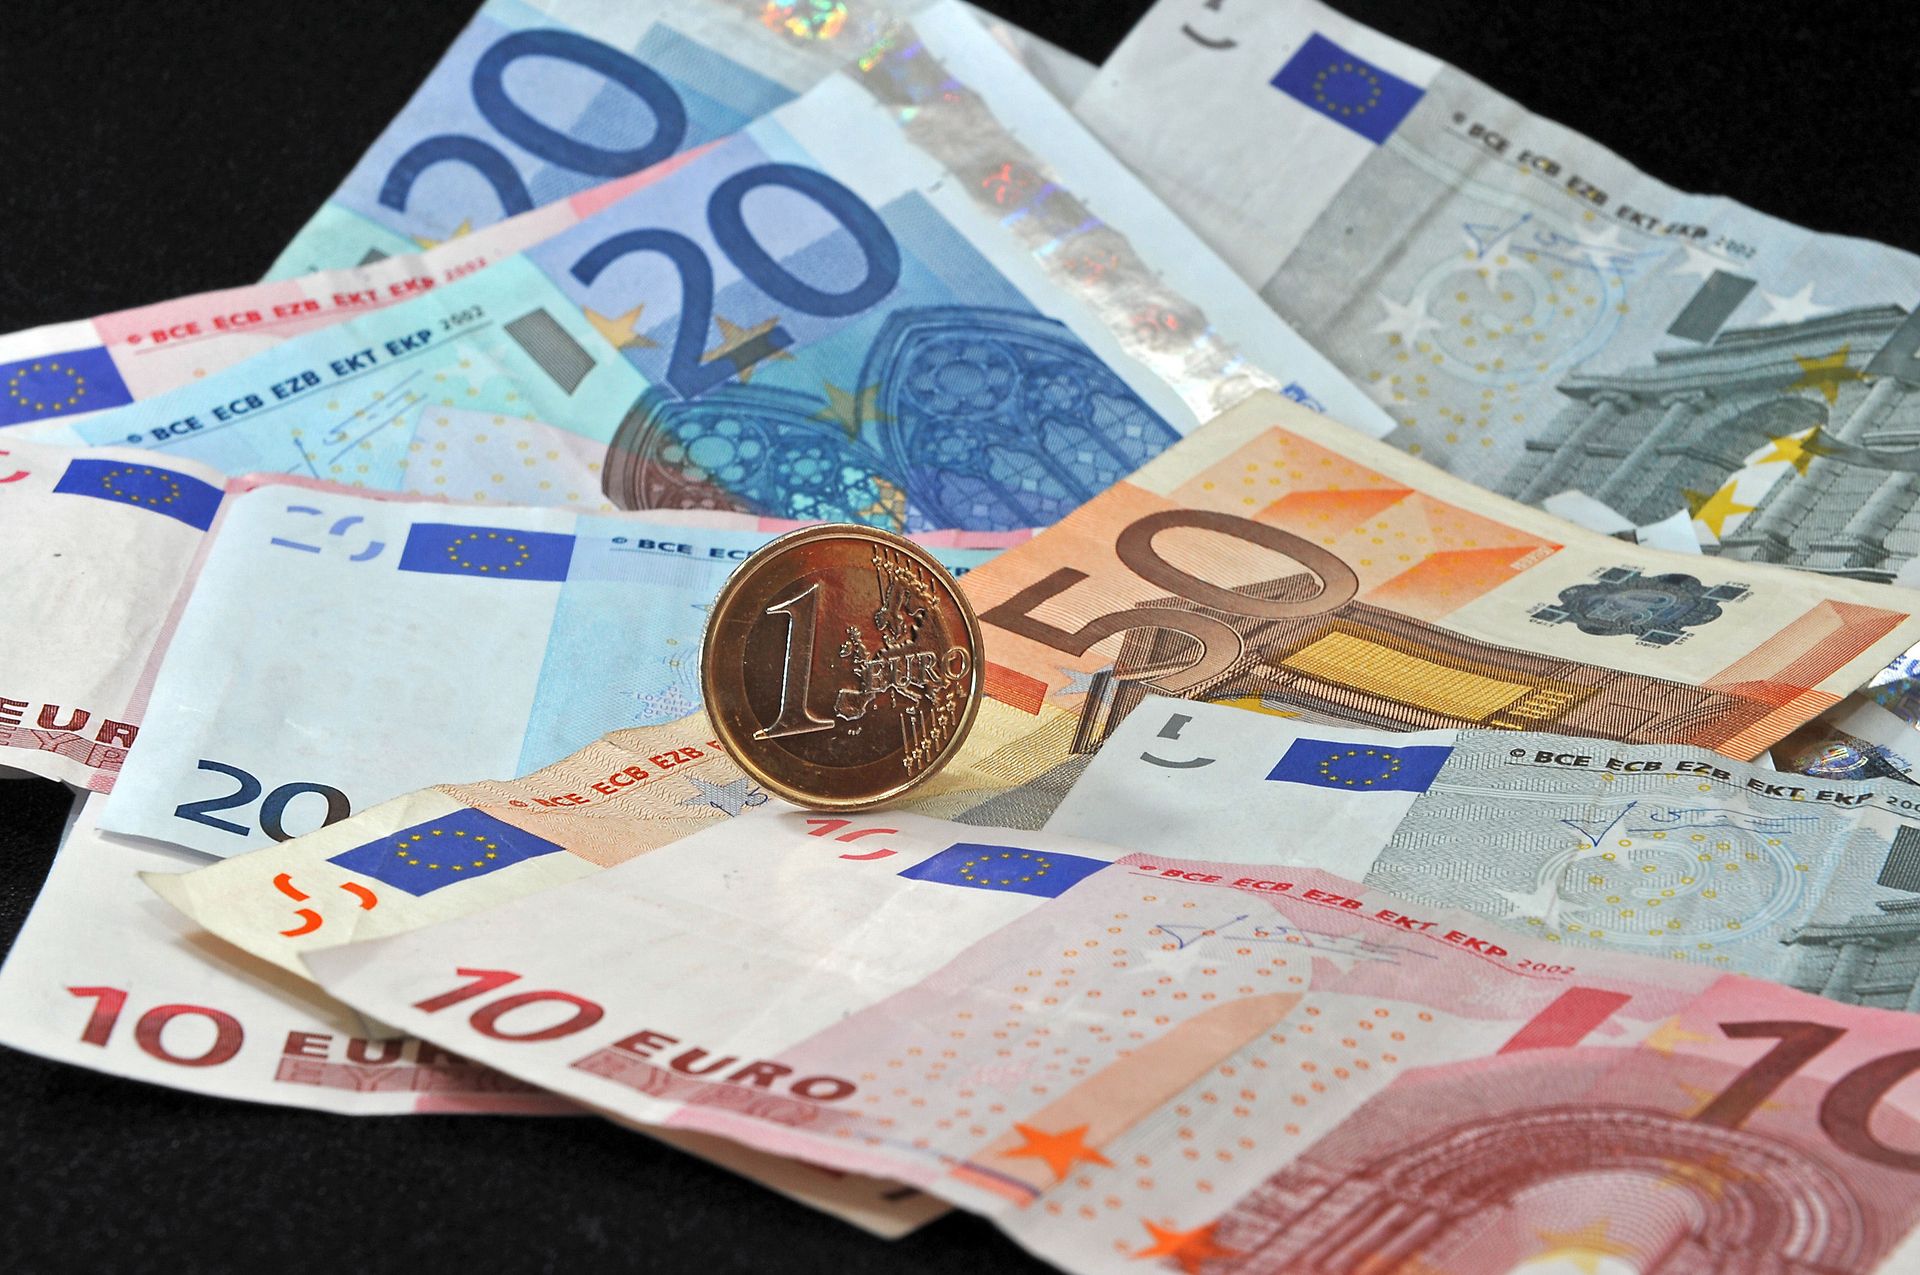 Un nouveau billet de 10 € est mis en circulation à partir du 23